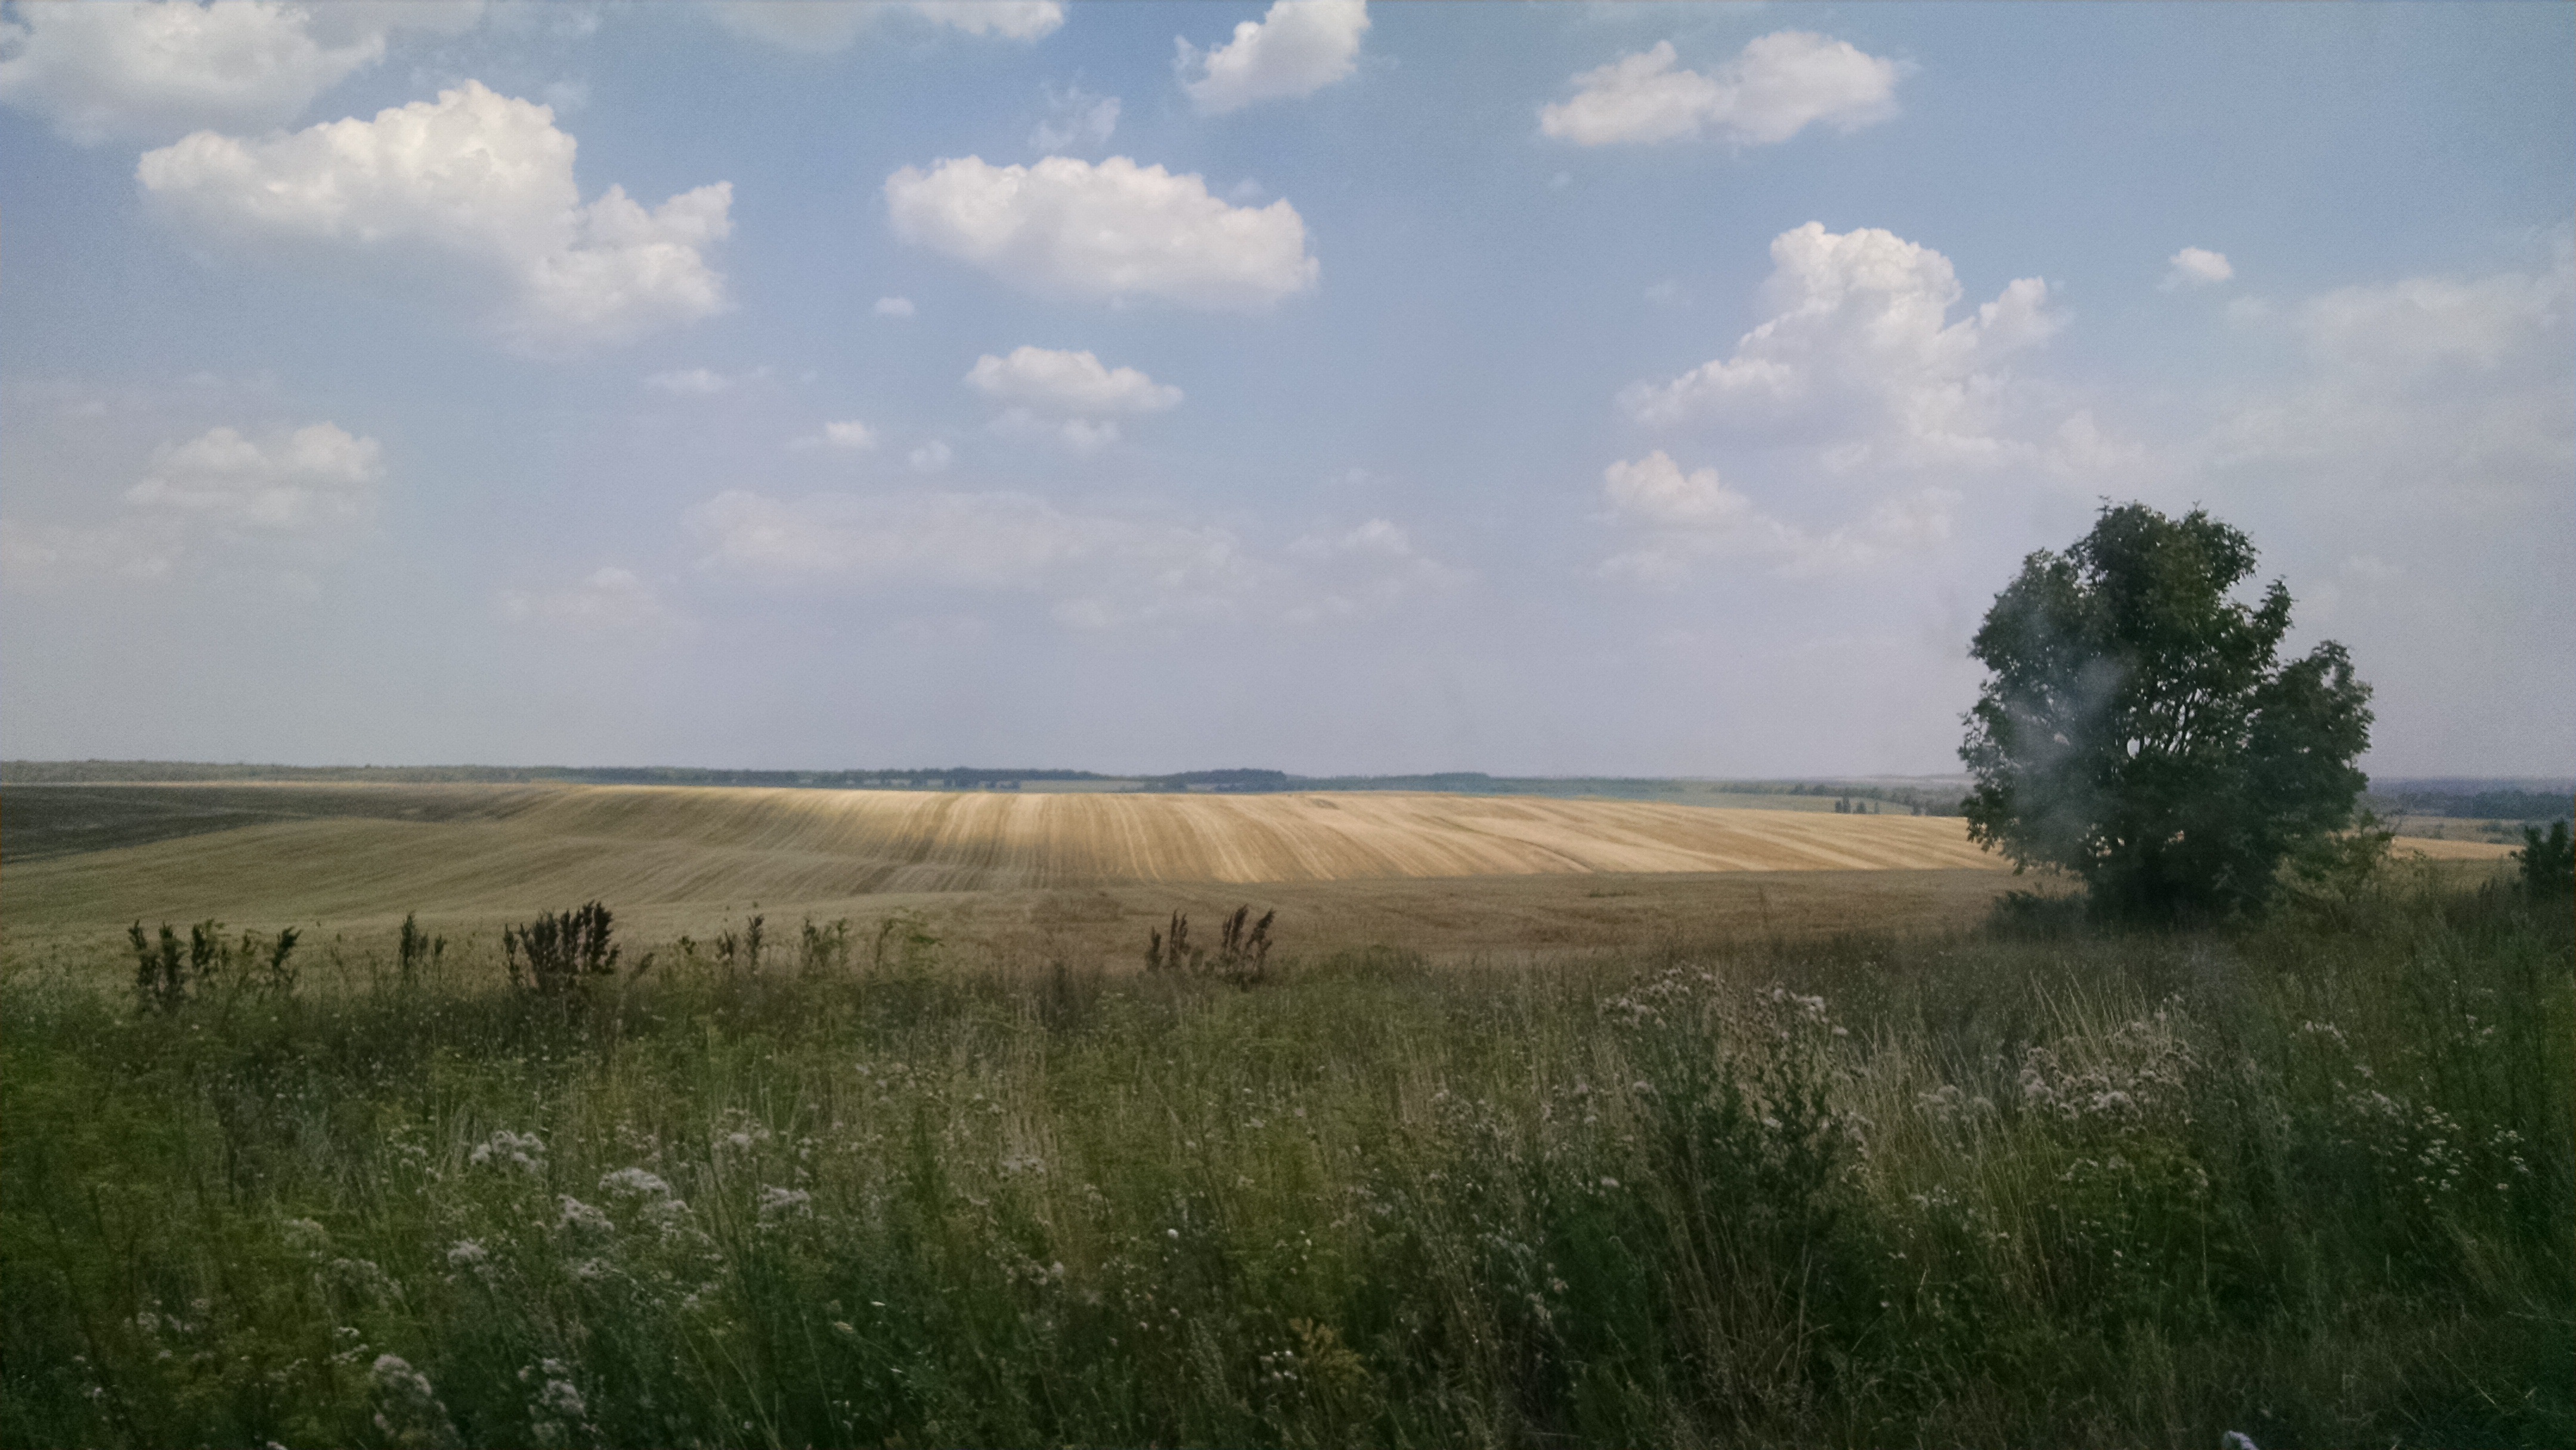 Ukrainian breadbasket - for hundreds of kilometers